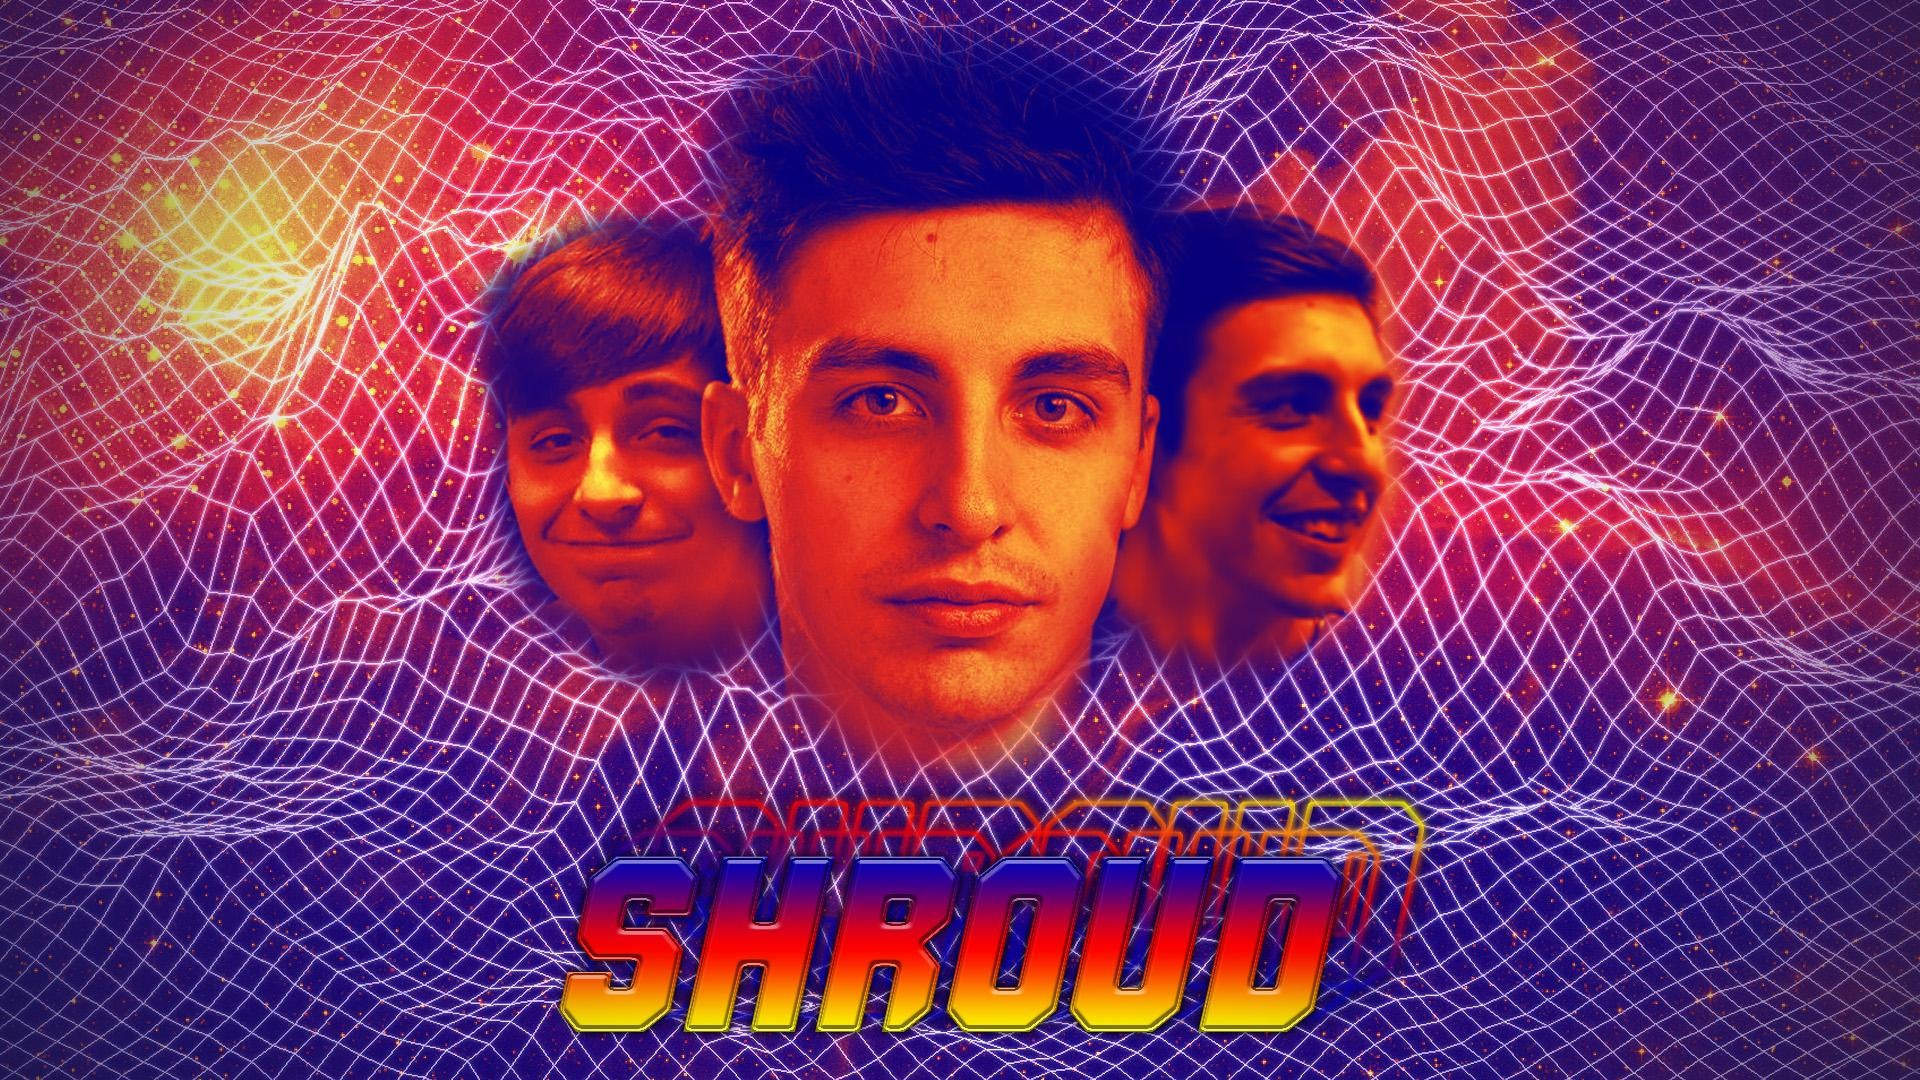 Youtuber Shroud Background